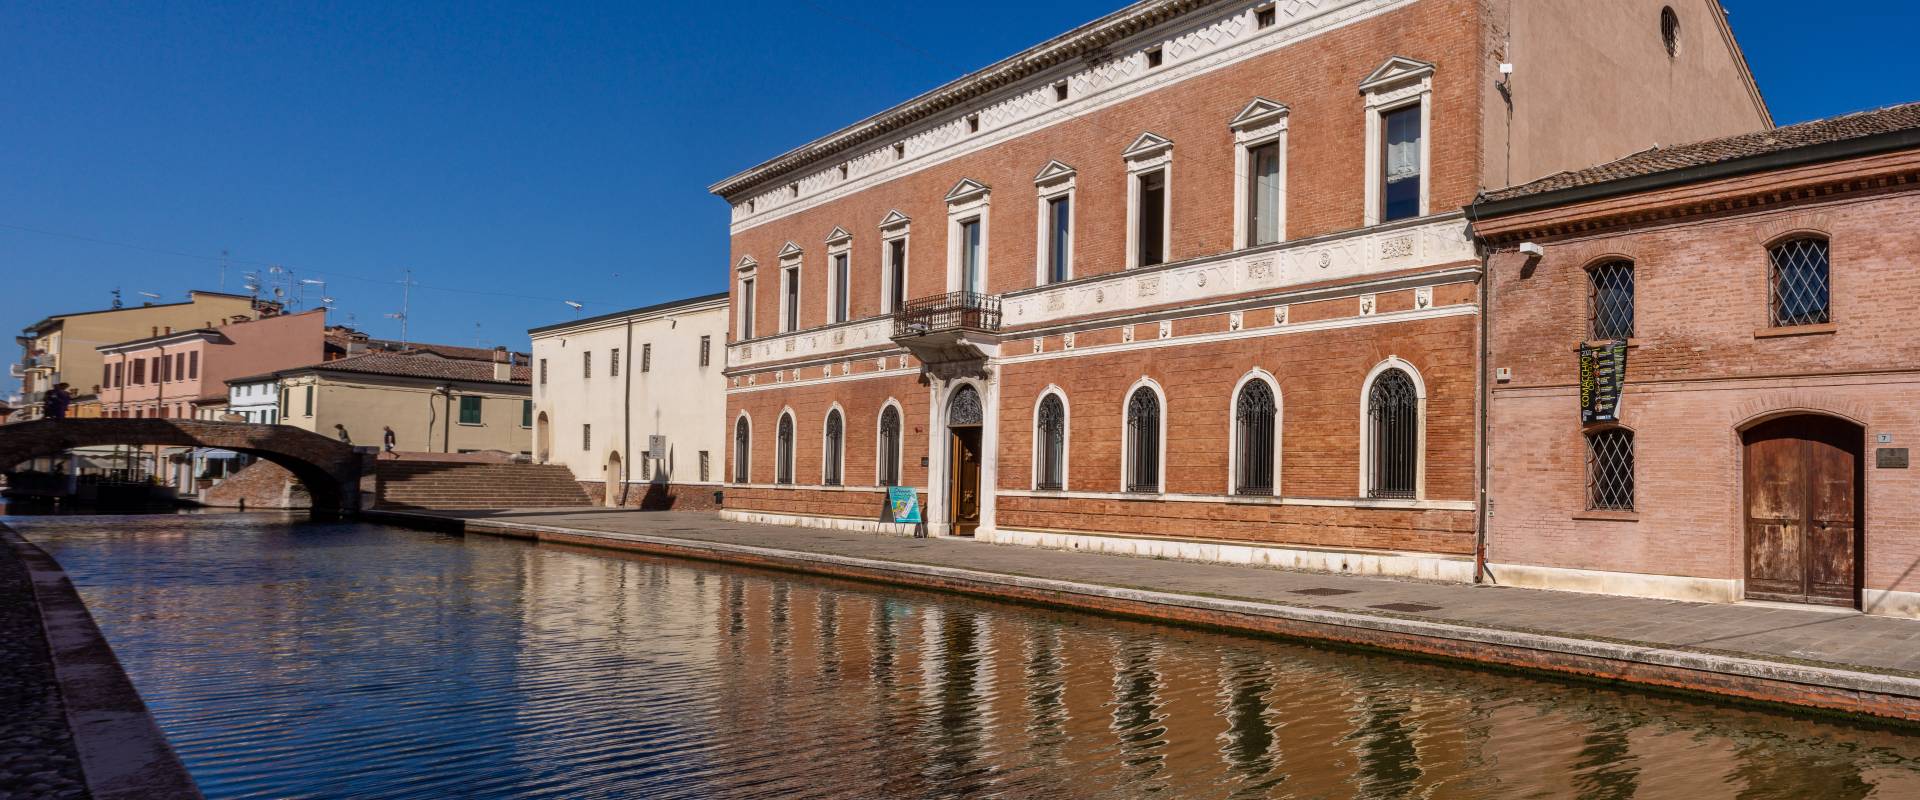 IsNFHG Palazzo Bellini - Comacchio foto di Vanni Lazzari